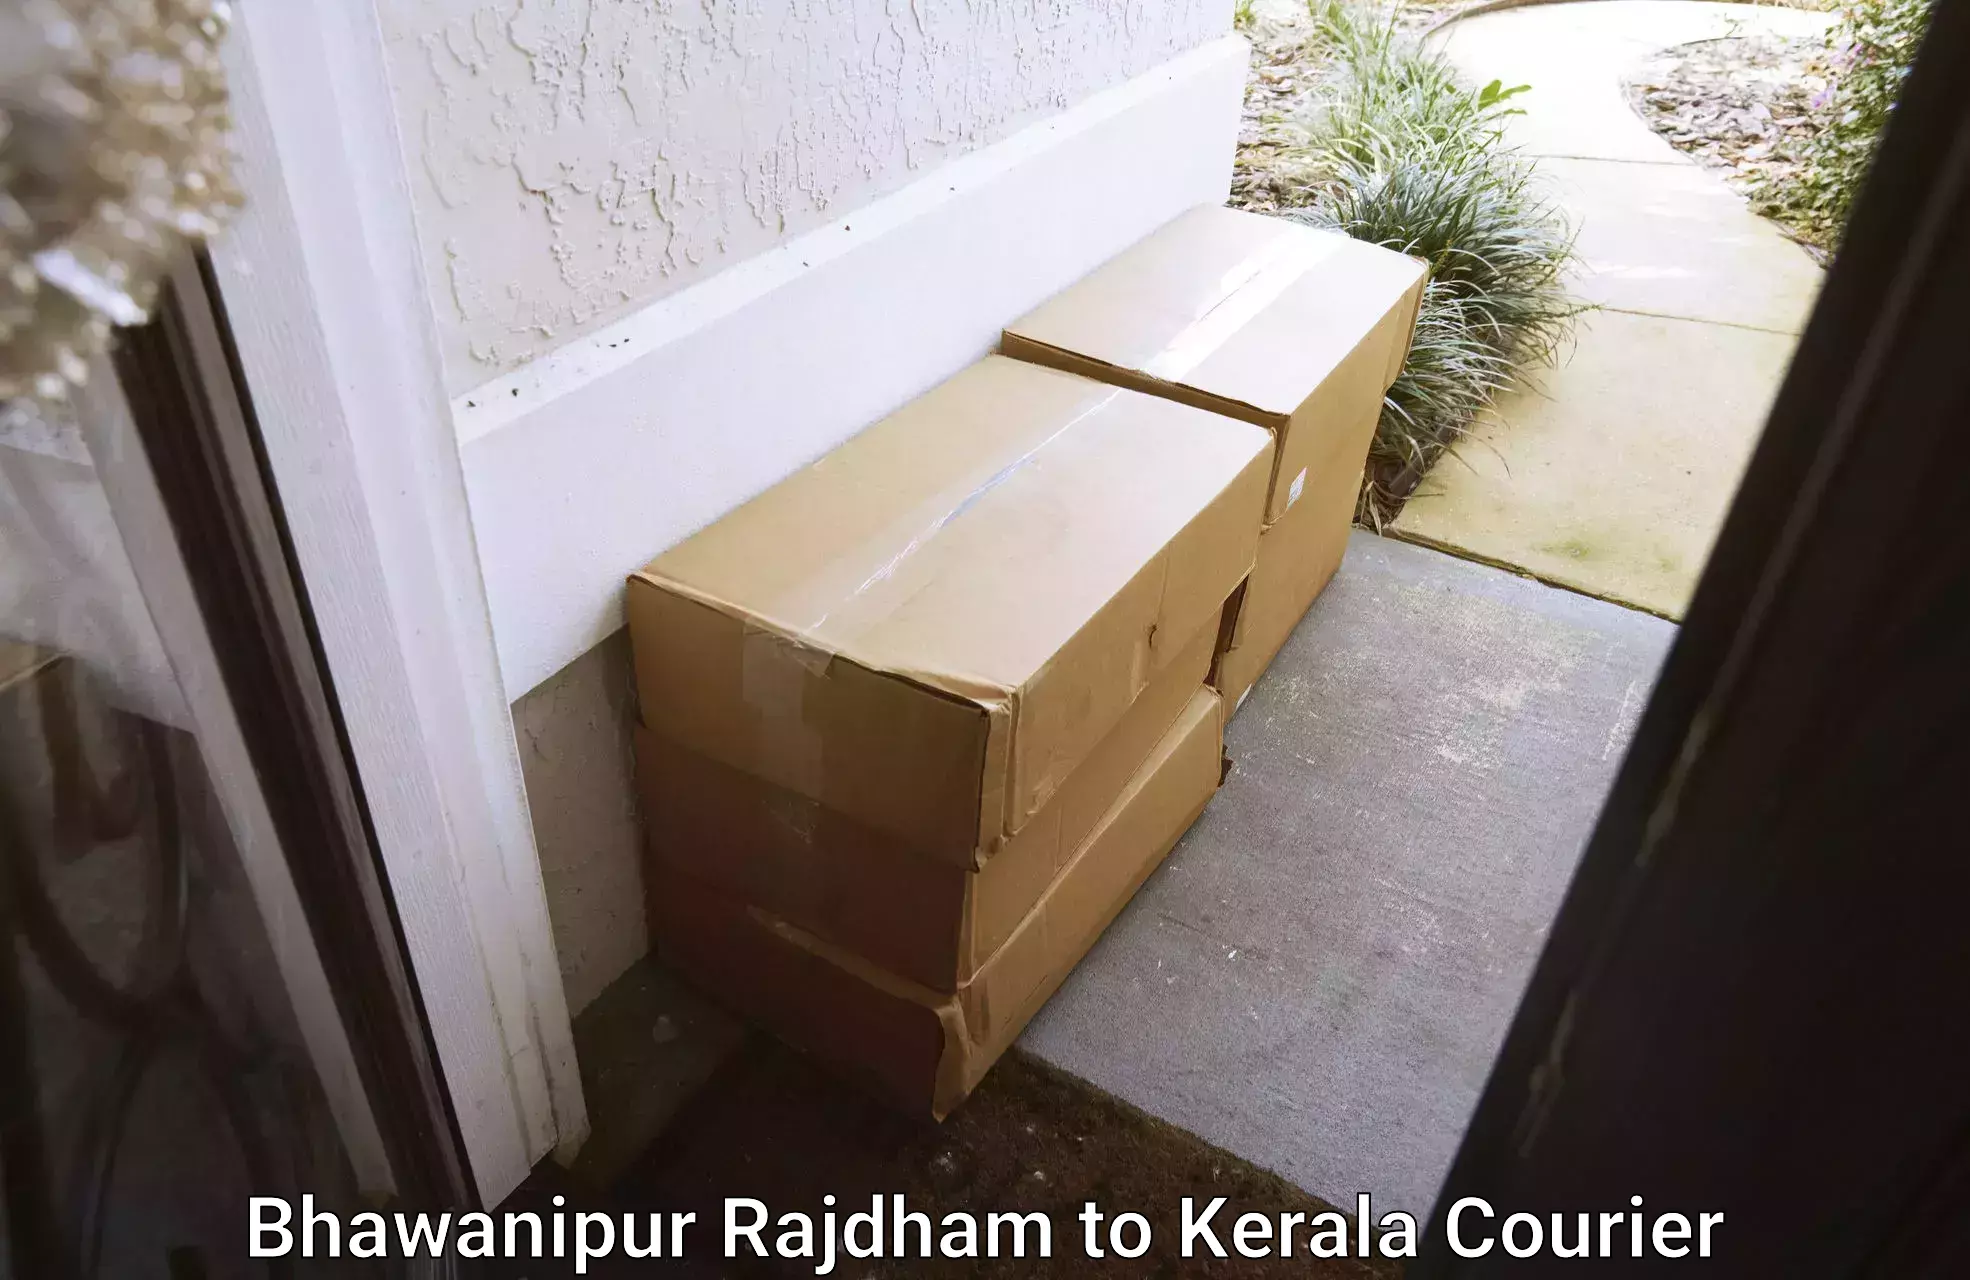 Professional movers and packers Bhawanipur Rajdham to Guruvayur